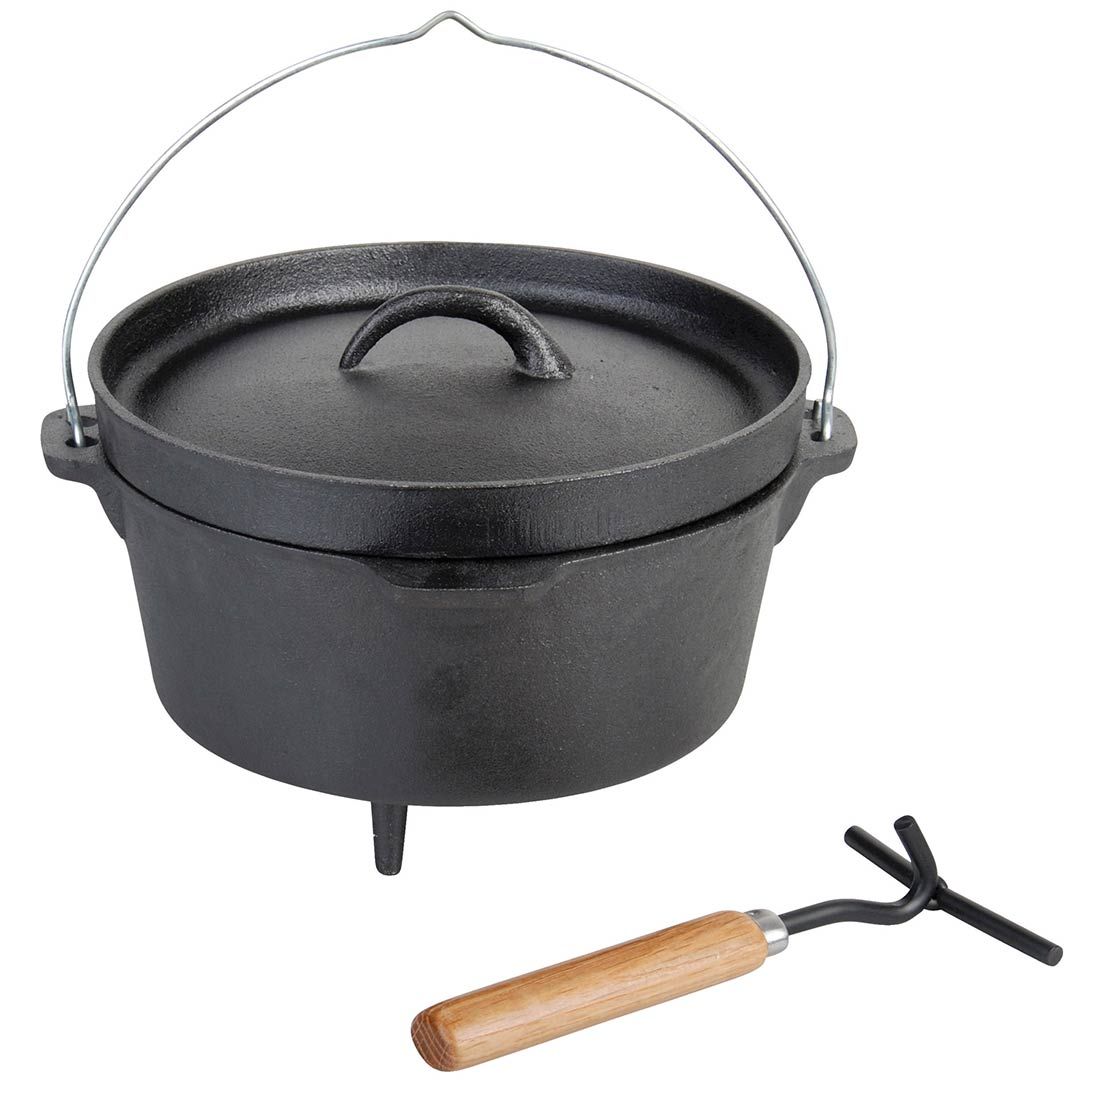 Esschert Design Campfire Pot, Fire Pit Cooking Pot